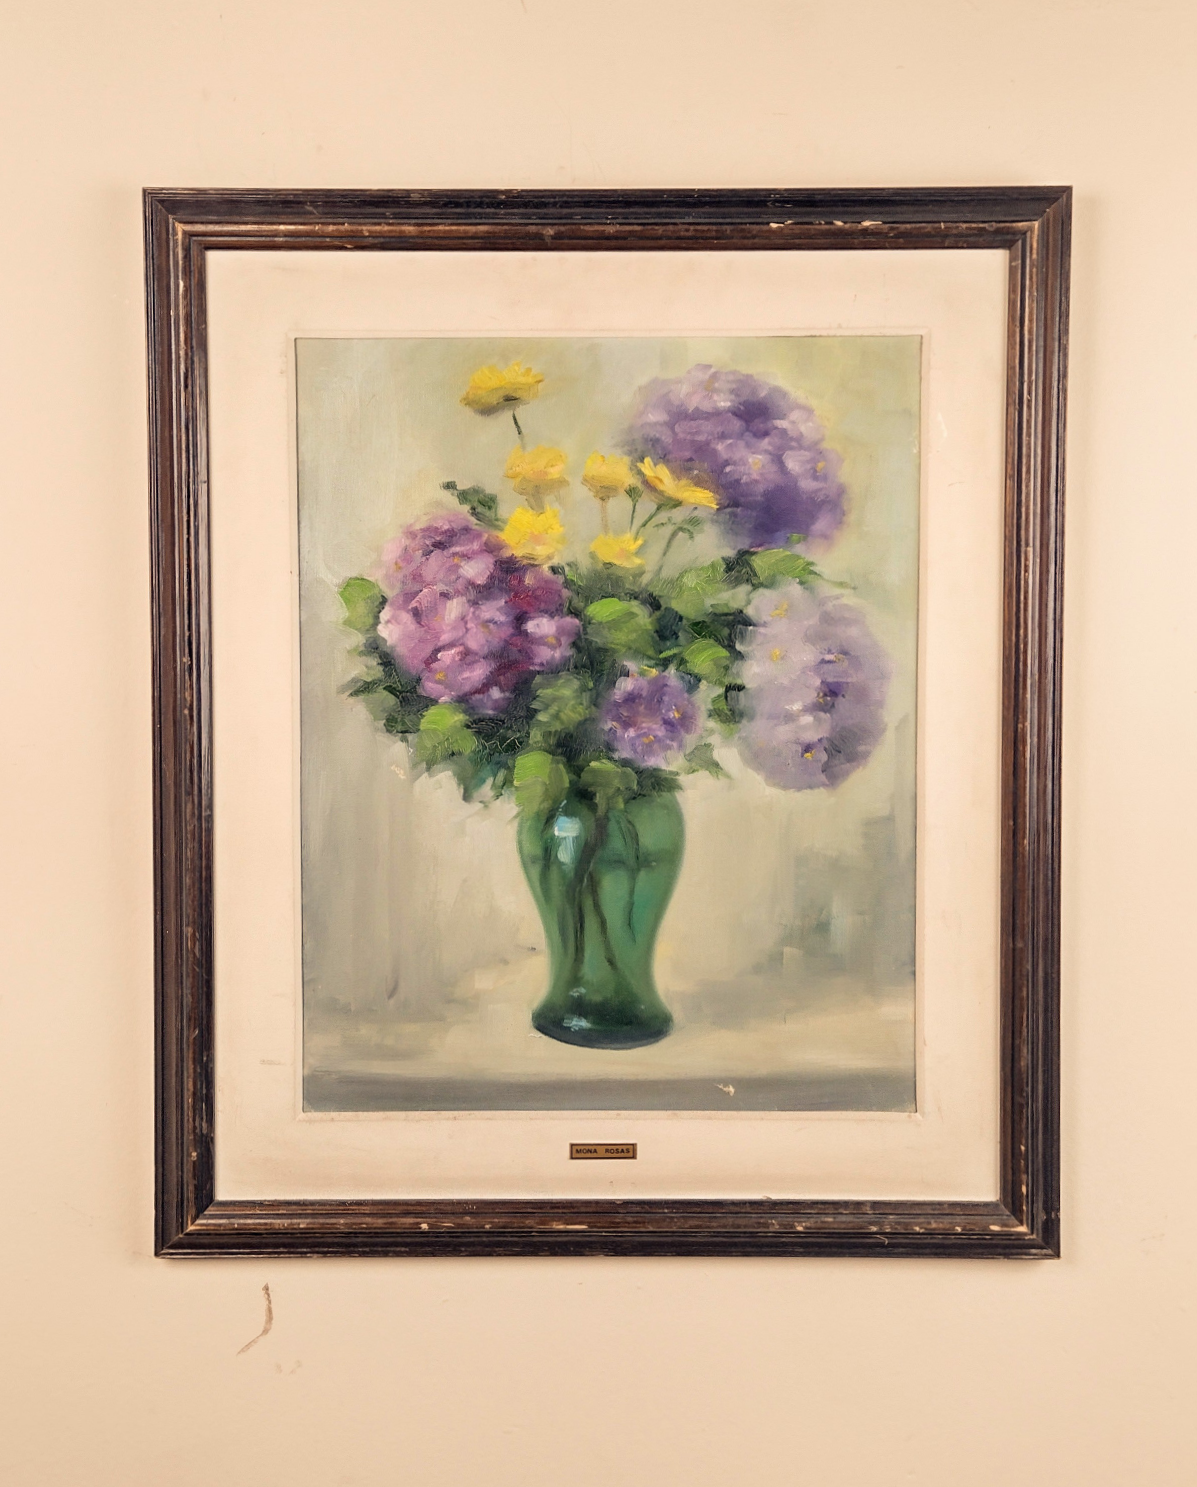 Quadro pintado à mão "Vaso com flores" (68cm X 58cm)